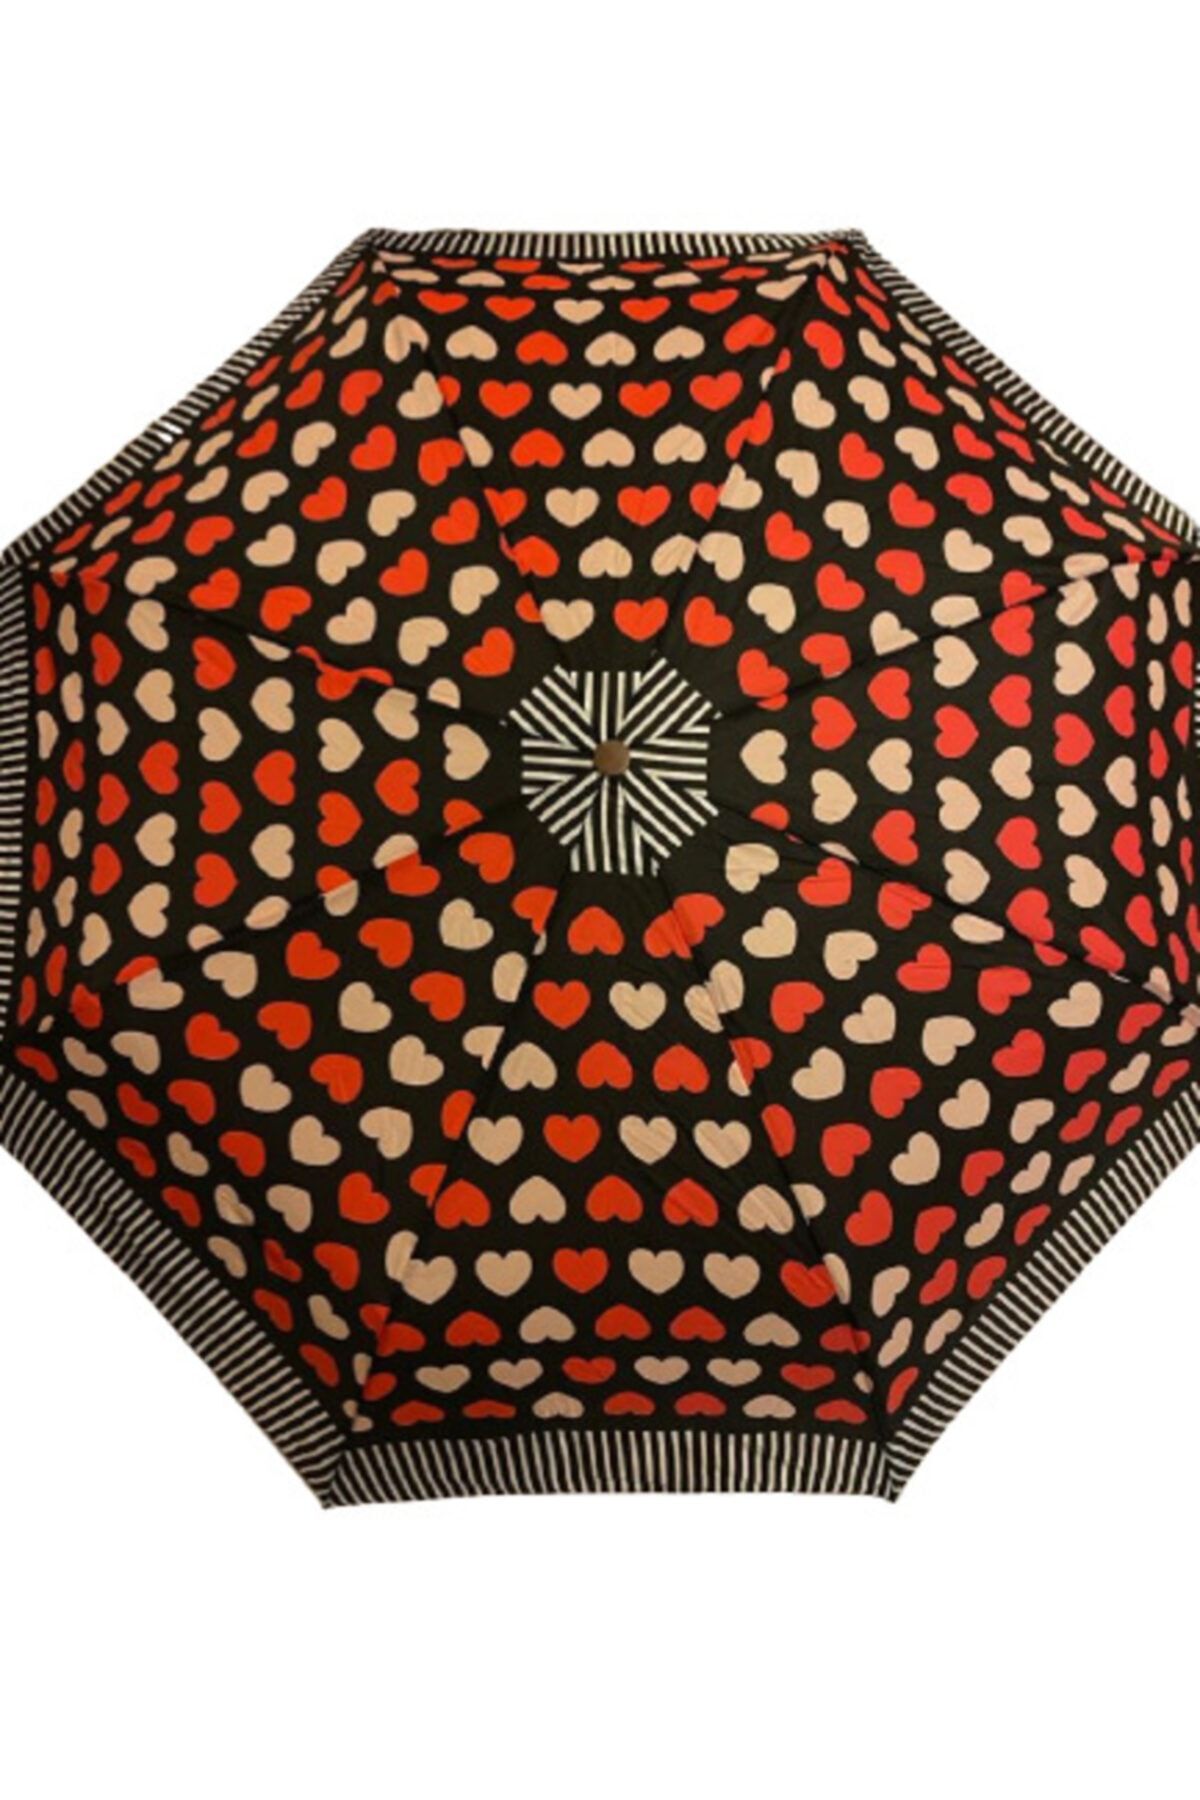 Çiçek Şemsiye Kadın Şemsiye Otomatik Kalp Desenli 8 Telli Dayanıklı Kaliteli